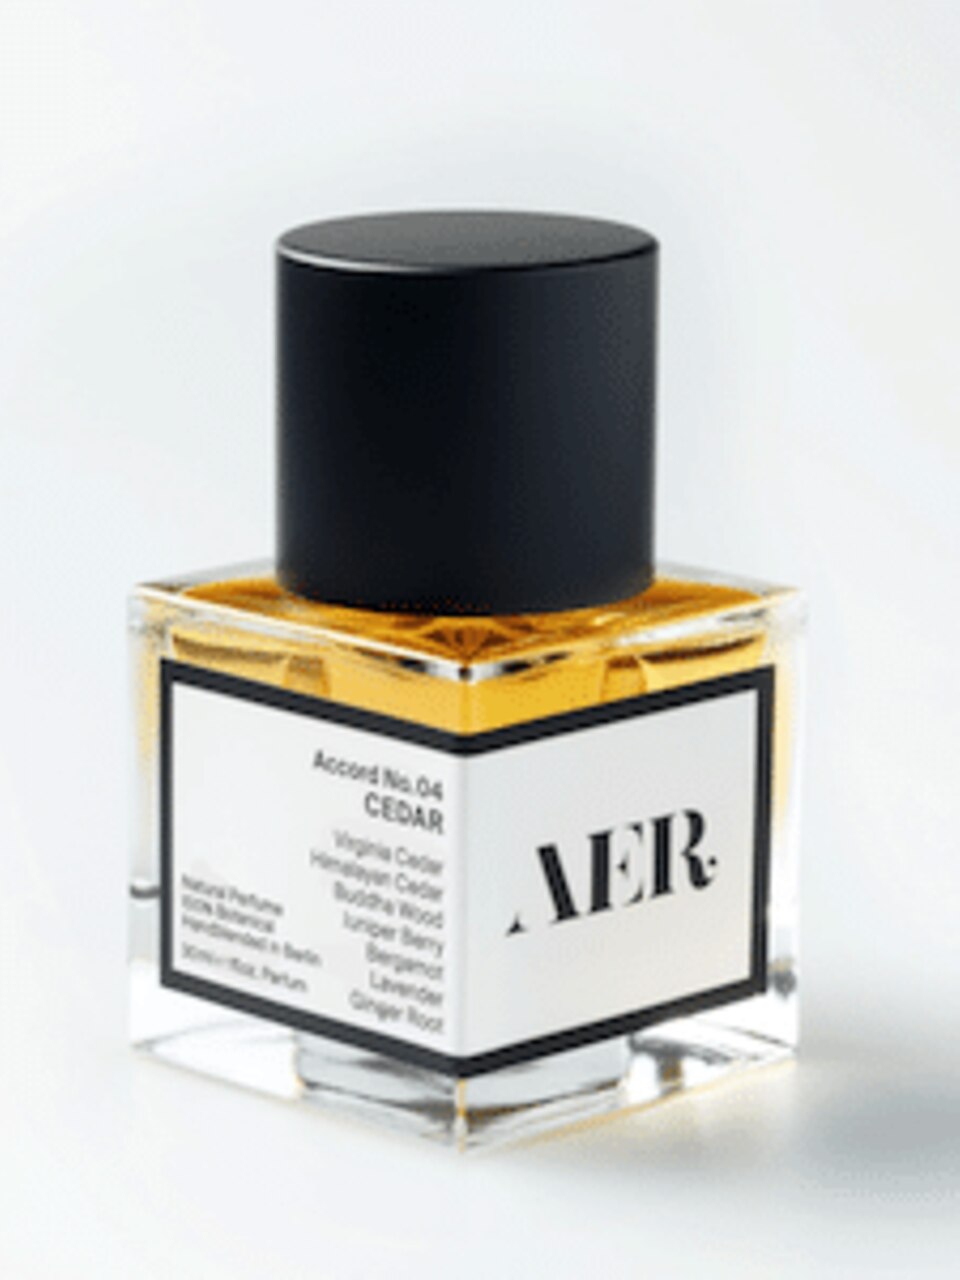 Das Parfüm „Accord No. 4: Cedar“ von AER Scents